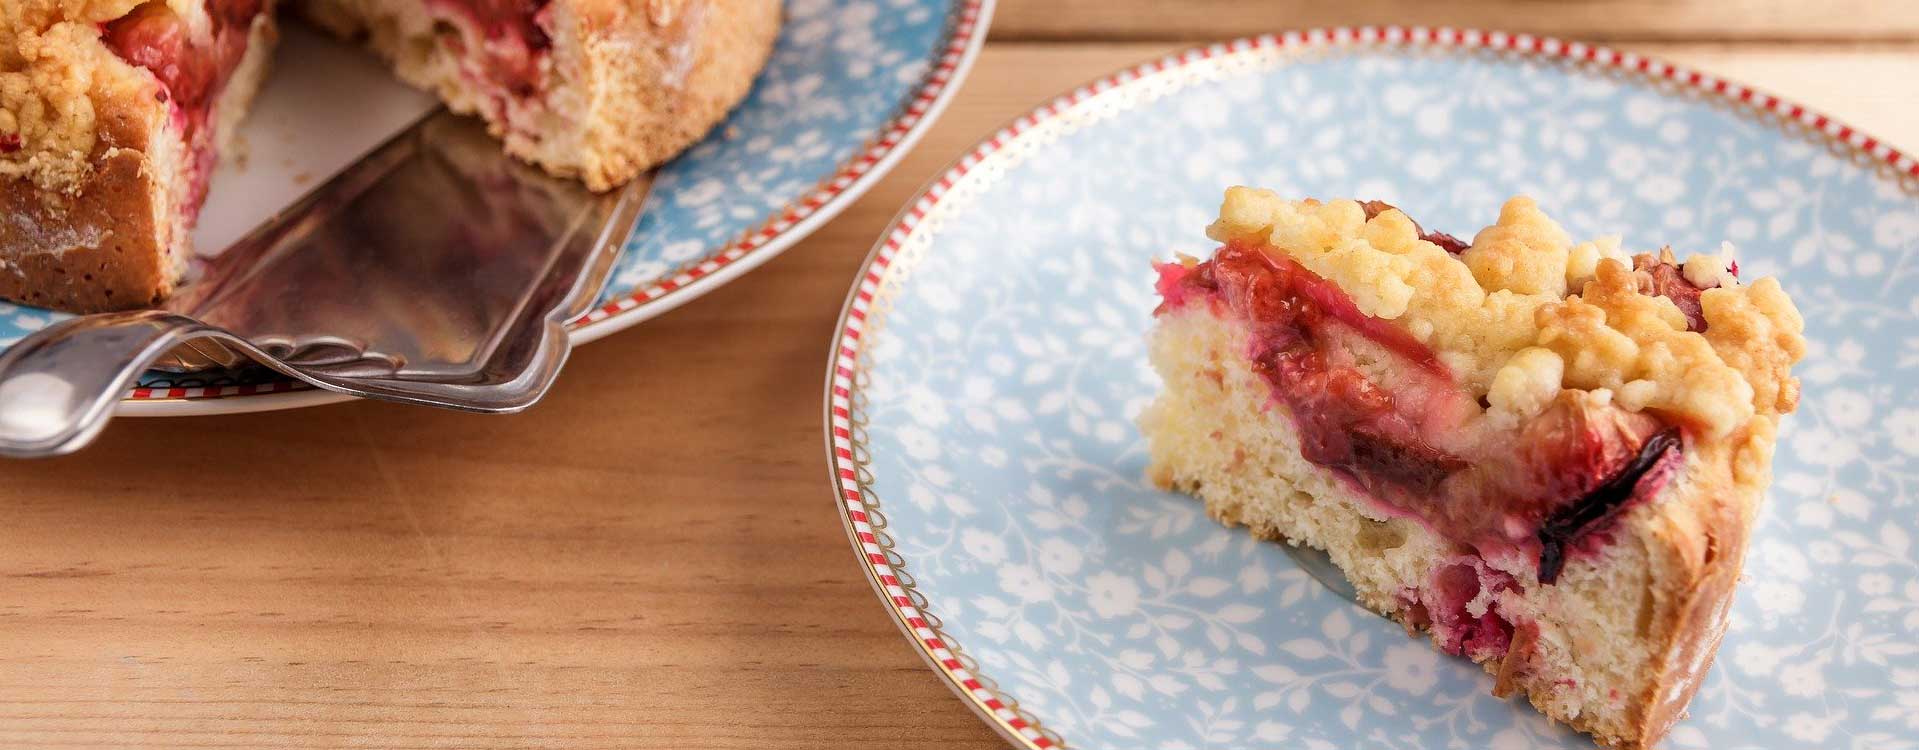 Glutenfreier Zwetschgenkuchen: Ein Stück auf einem Teller